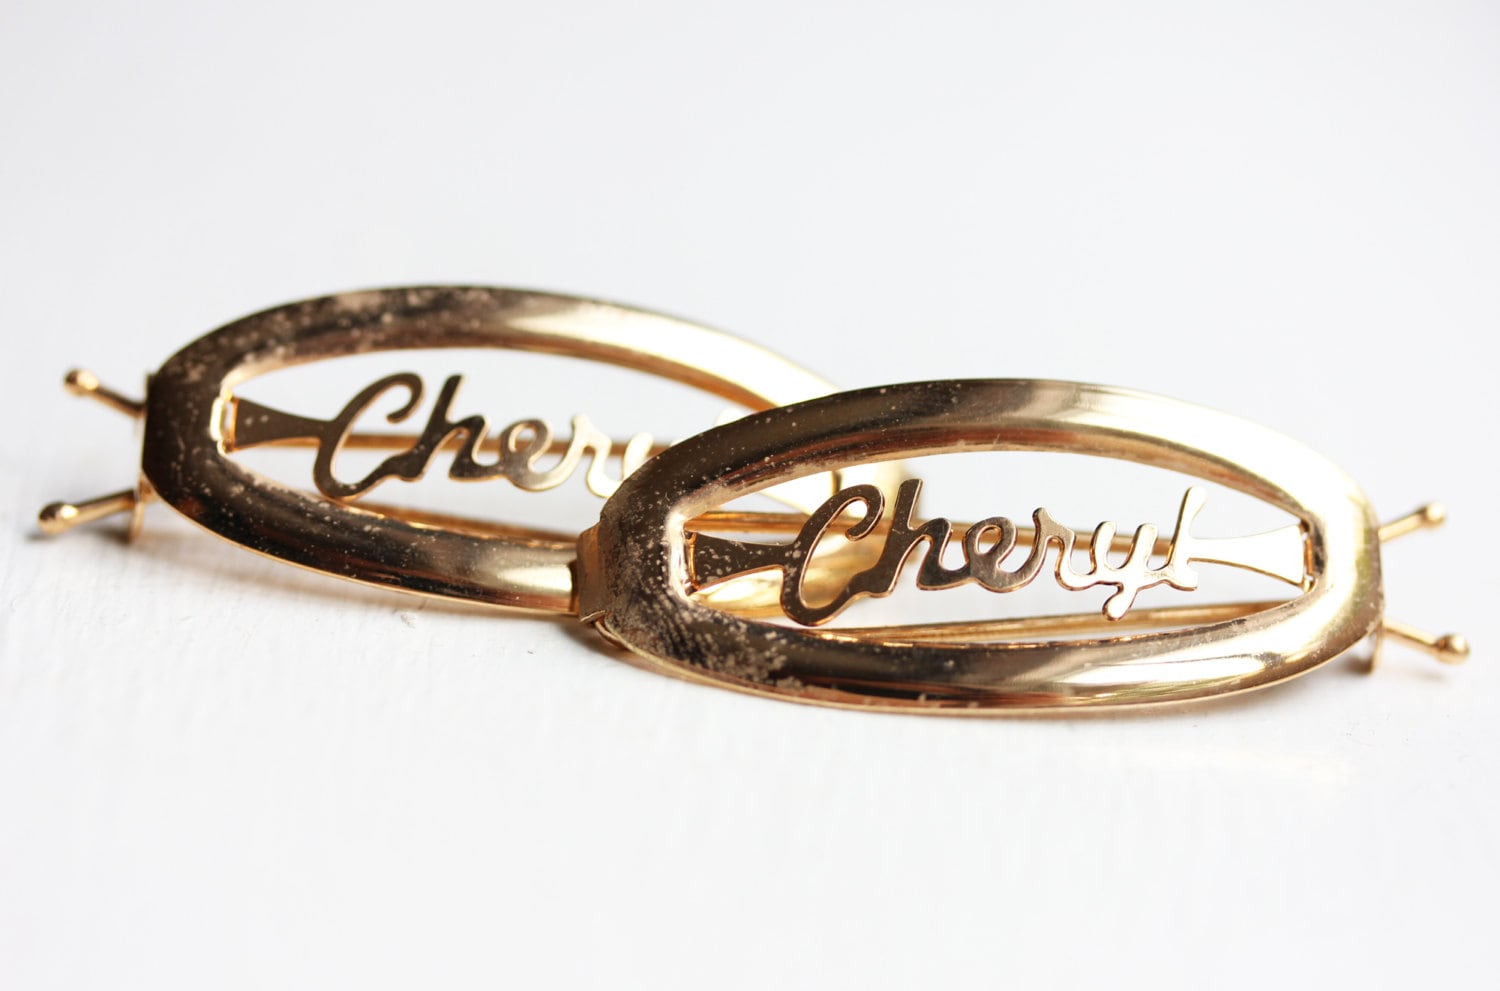 Cheryl Haarspangen Gold, Name Haarspangen, Vintage Gold Clips, Schmuck von diamentdesigns